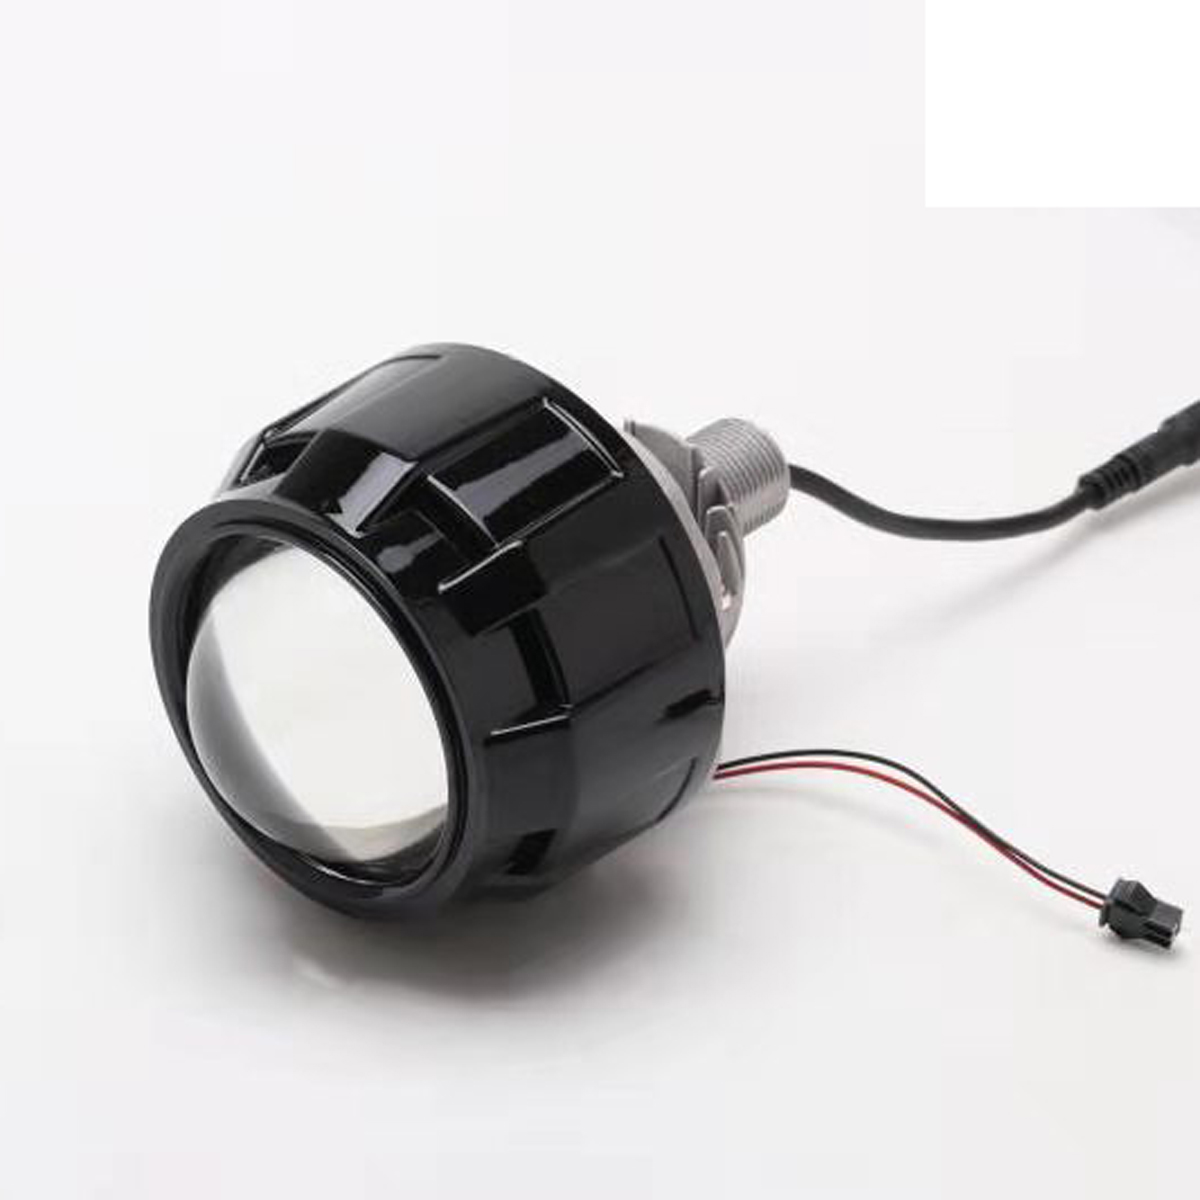 

2.5 Inch Car LED Headlights Retrofit H4 Projector Lens For RHD Black/Silver High/Low Beam 35W 3800LM